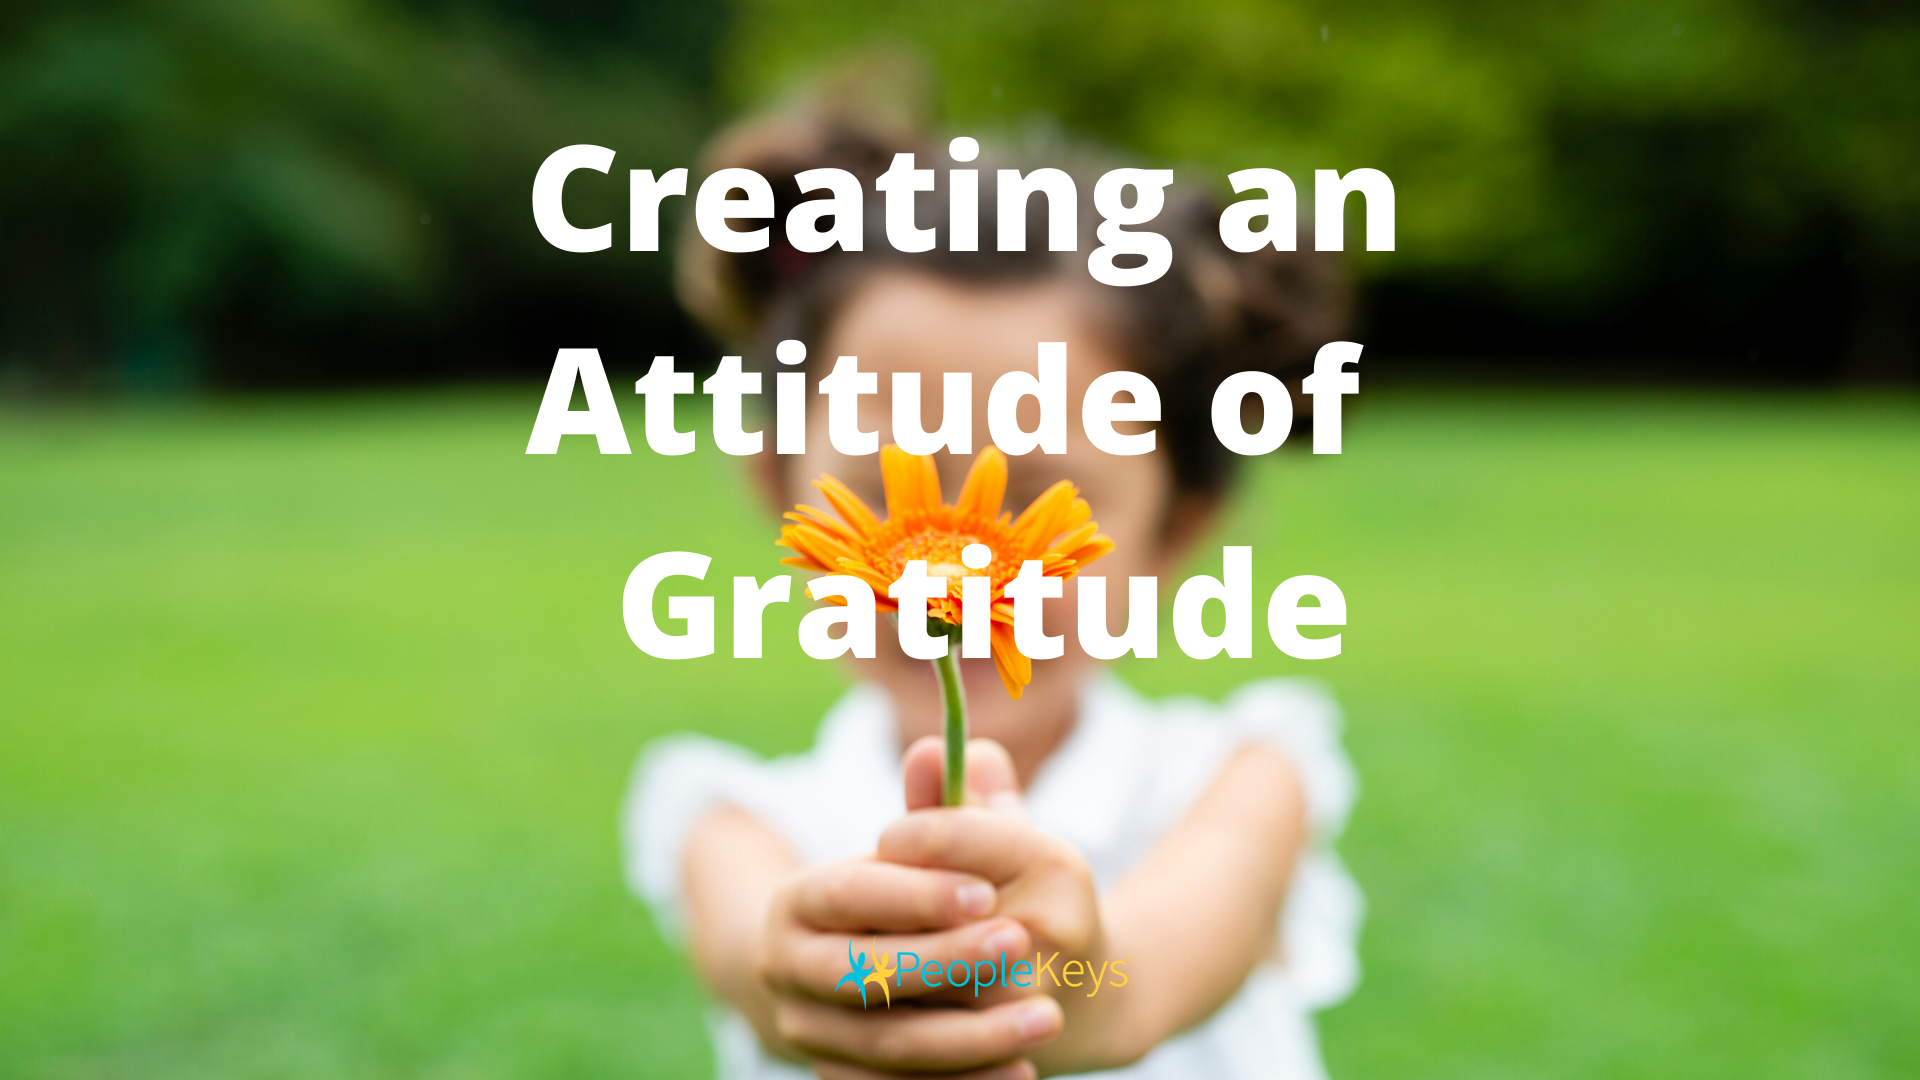 Creating an Attitude of Gratitude